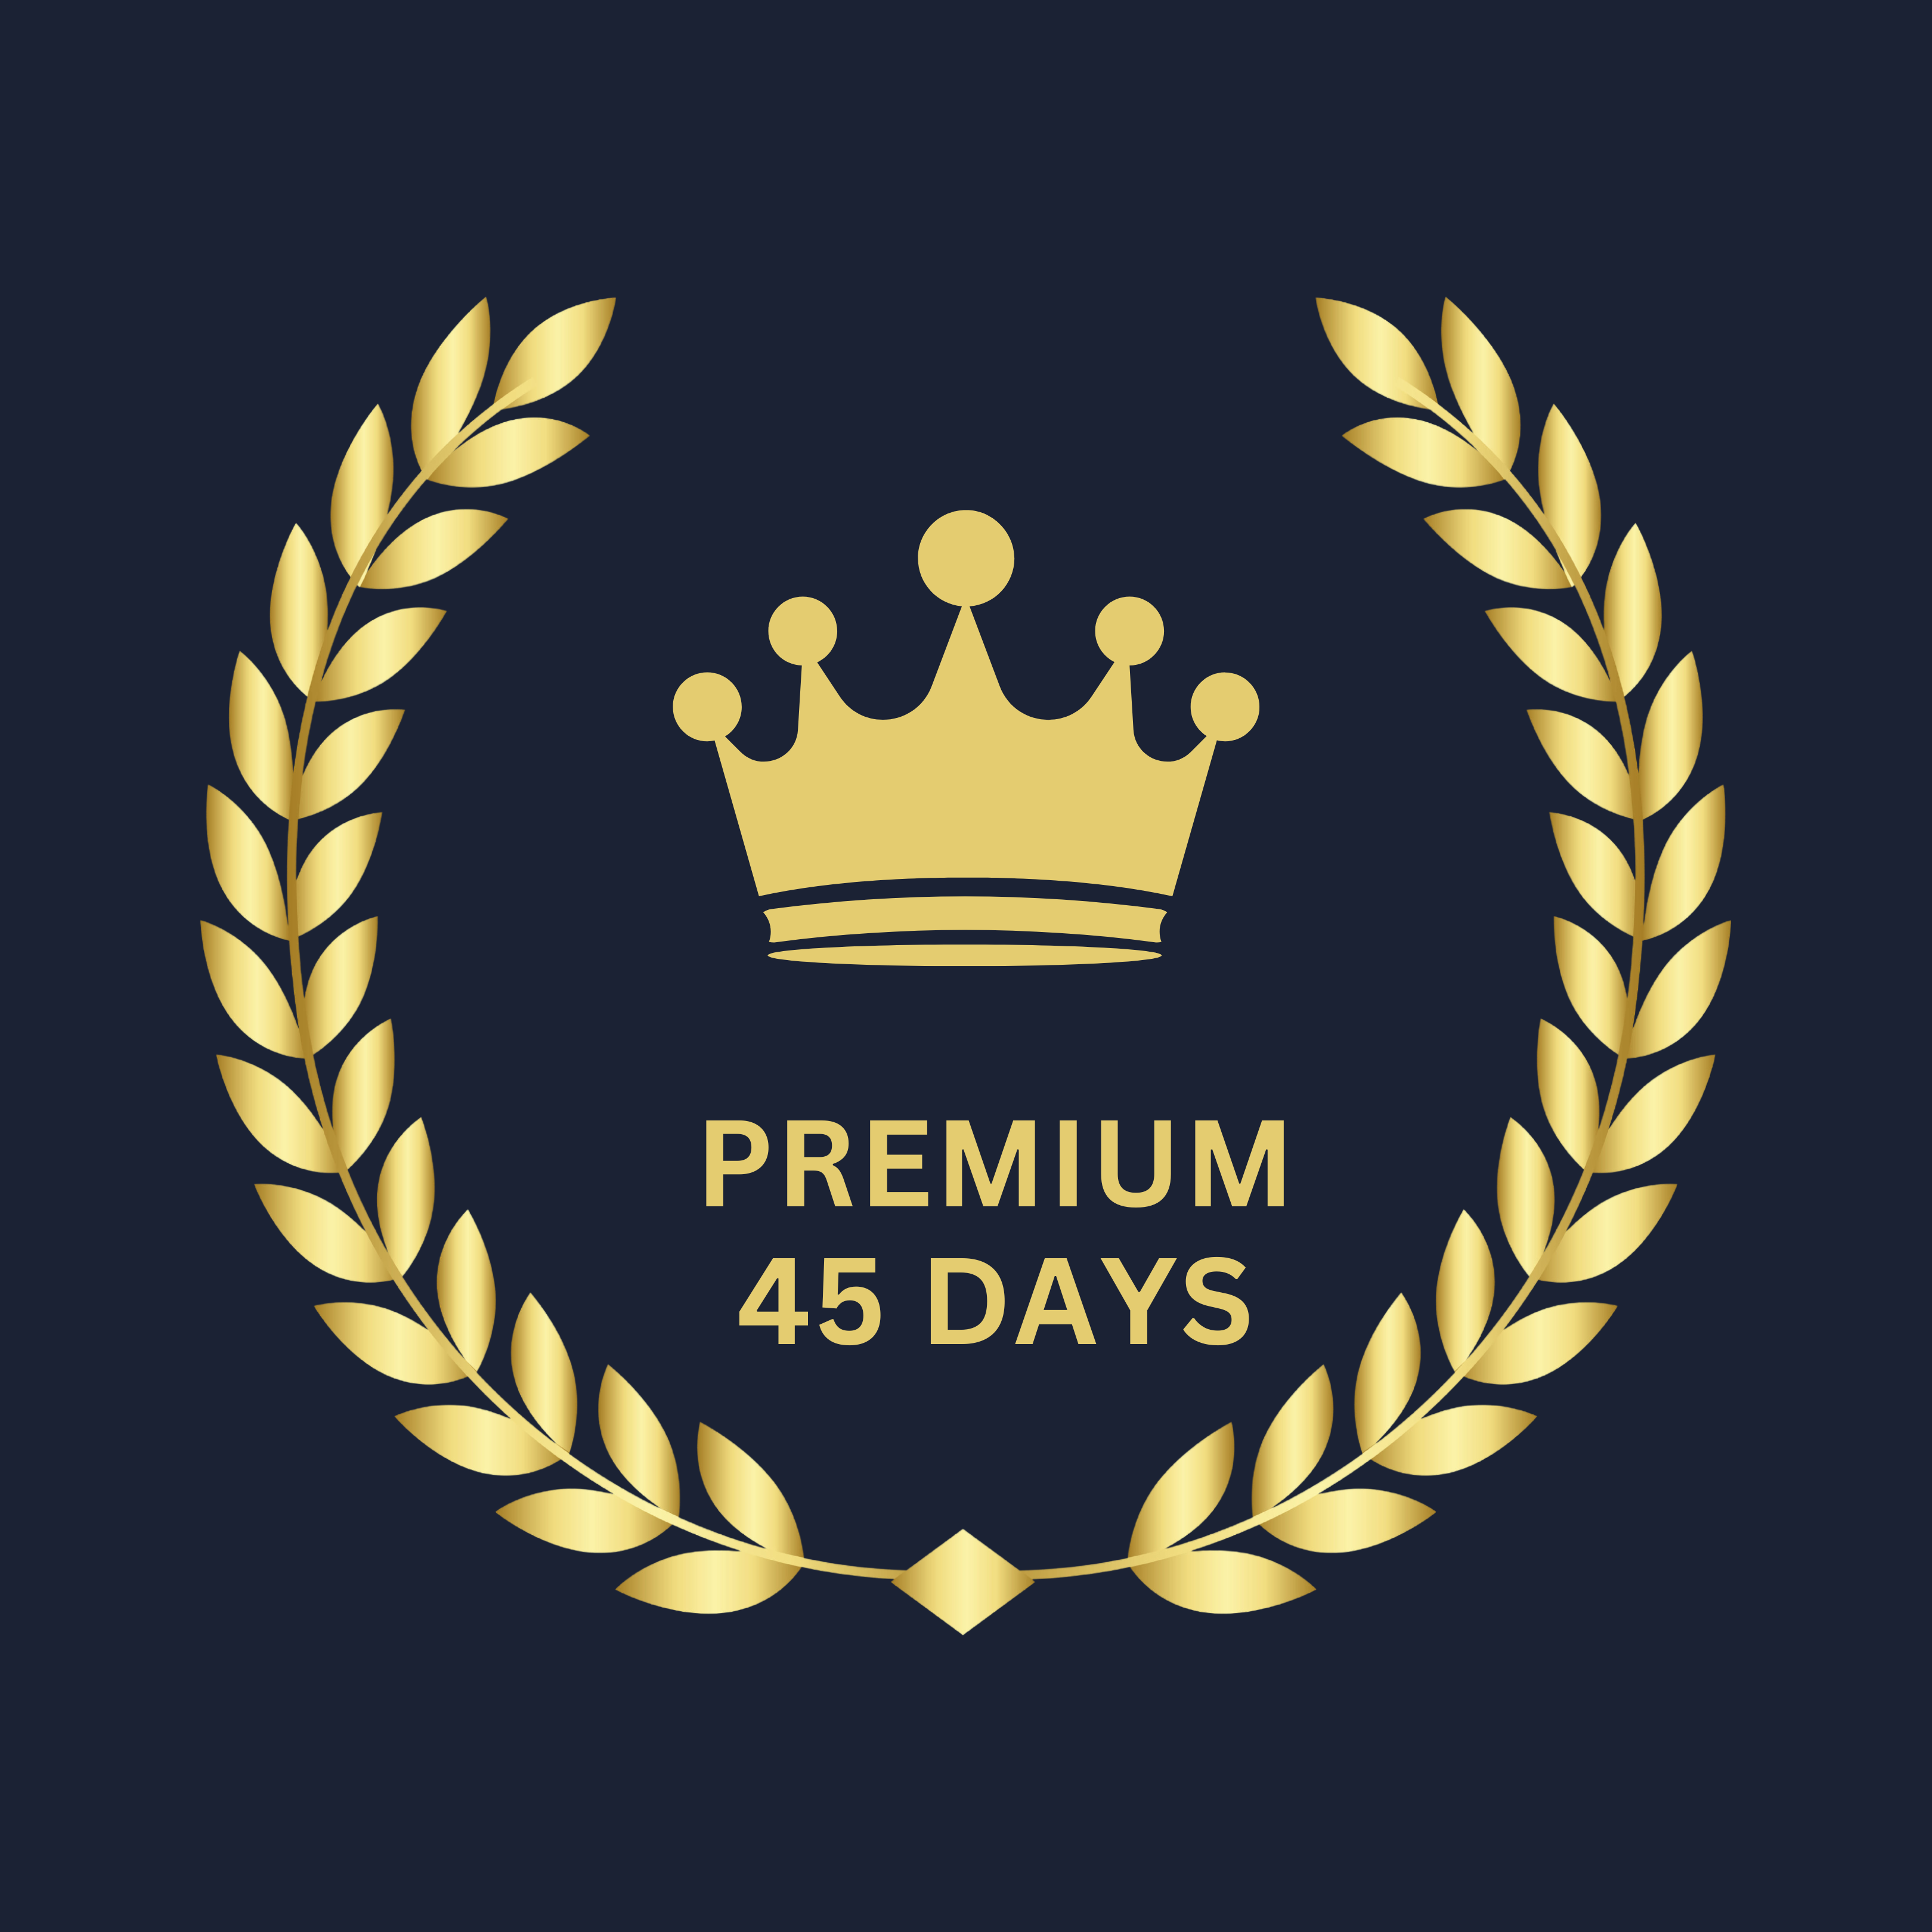 Premium 45 Days